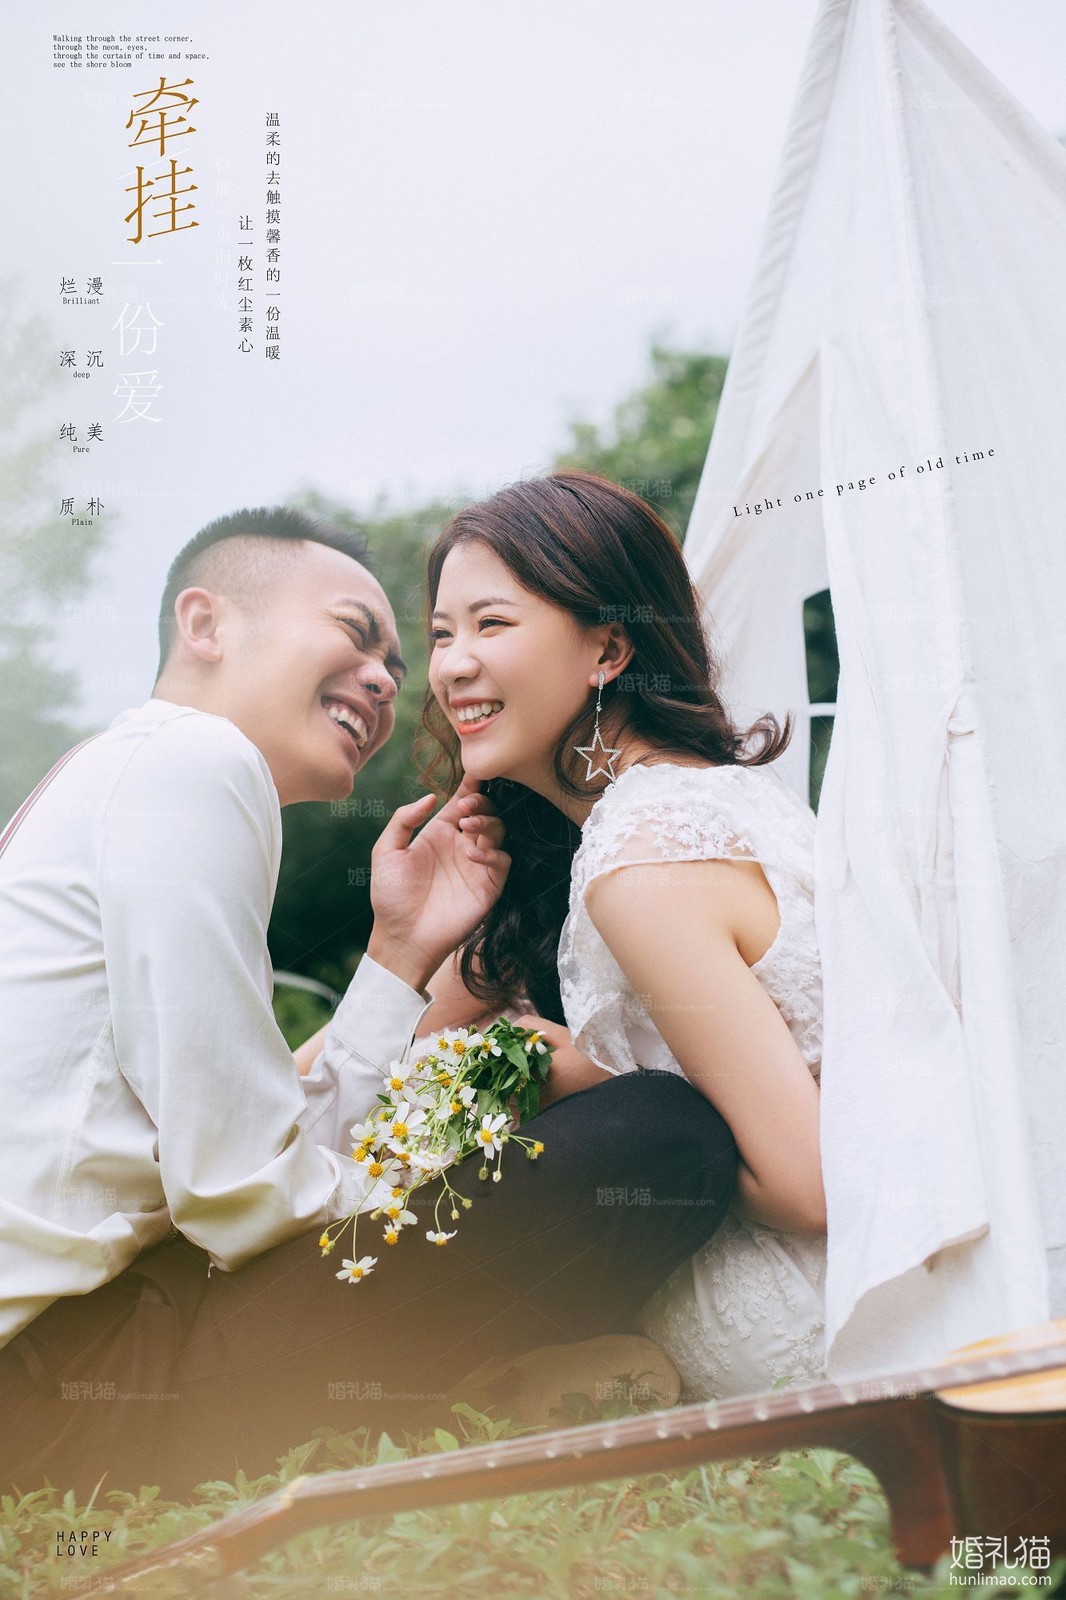 2019年7月广州婚纱照,,云浮婚纱照,婚纱照图片